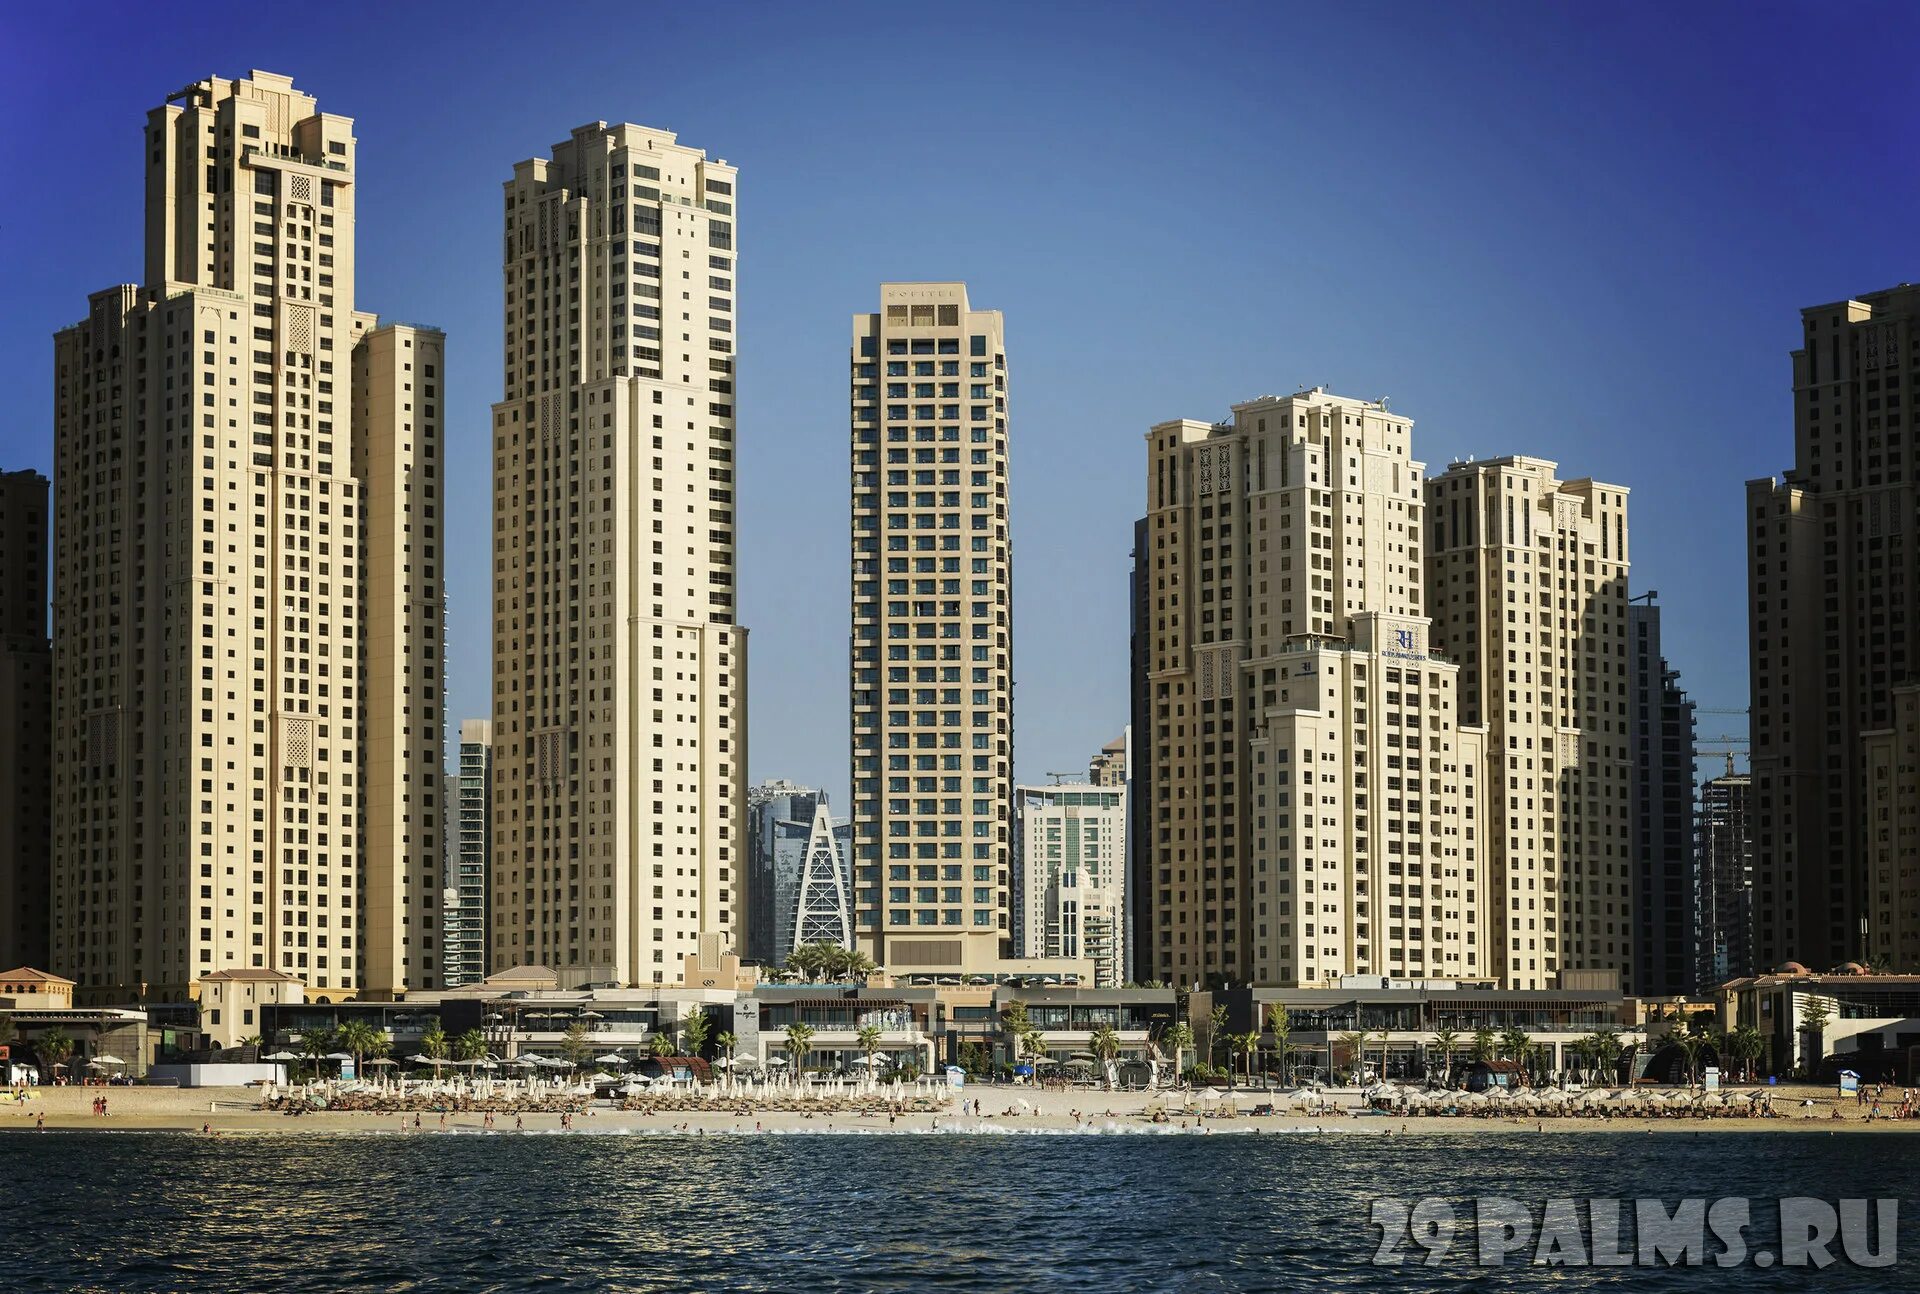 Five luxe jbr 5. Отель Sofitel Dubai Jumeirah Beach. Sofitel Dubai Jumeirah Beach 5. Променад JBR Дубай. Пляж JBR В Дубае.